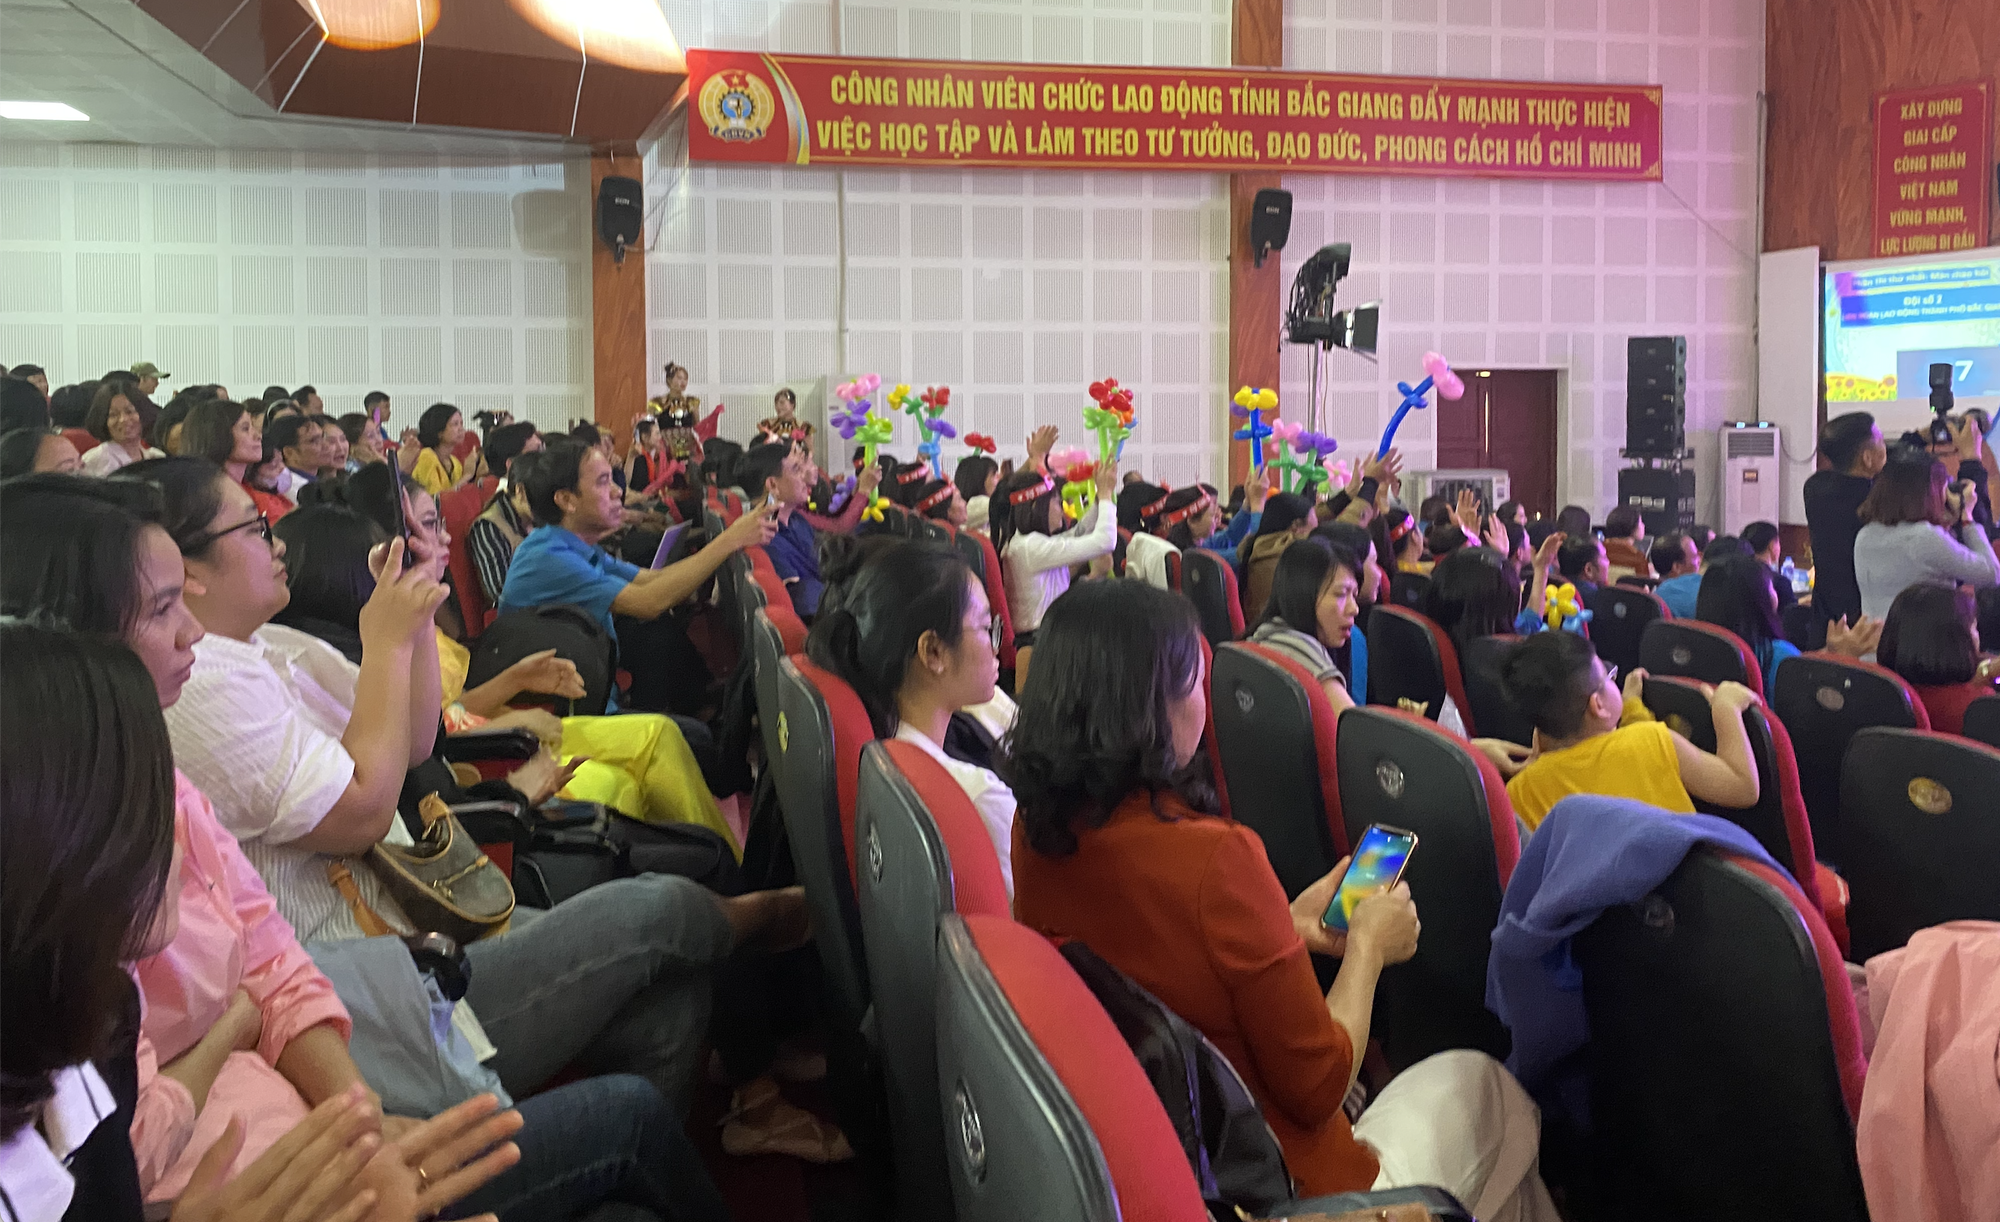 Bắc Giang: Khai mạc Vòng Chung kết chương trình sân chơi văn hóa “Giờ thứ 9”- Ảnh 3.